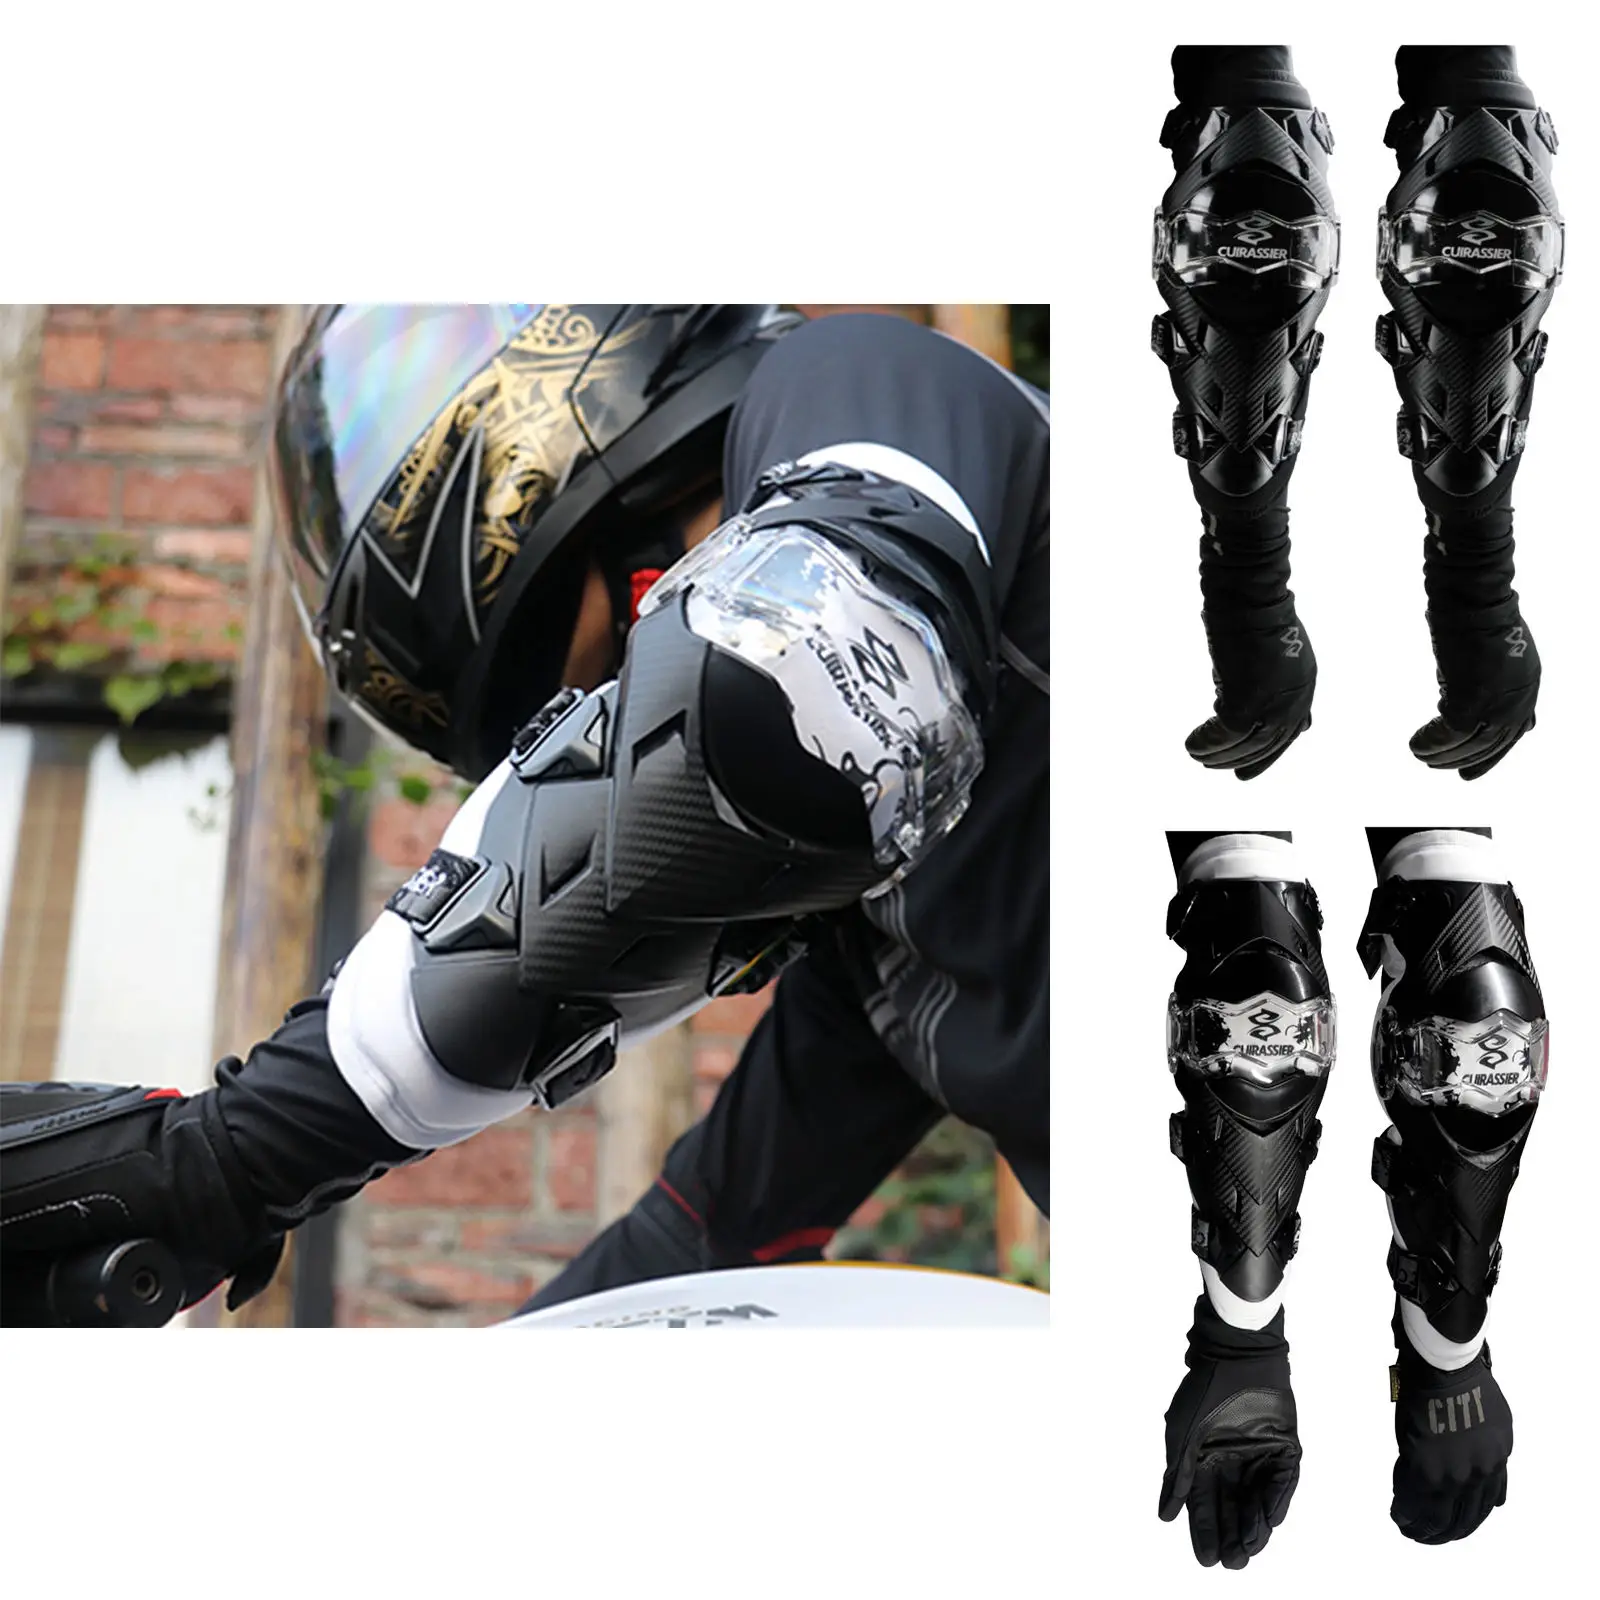 

Защита для локтя мотоцикла, налокотники Cuirassier E09 для мотокросса для внедорожных гонок, защита локтя для горного велосипеда, черный